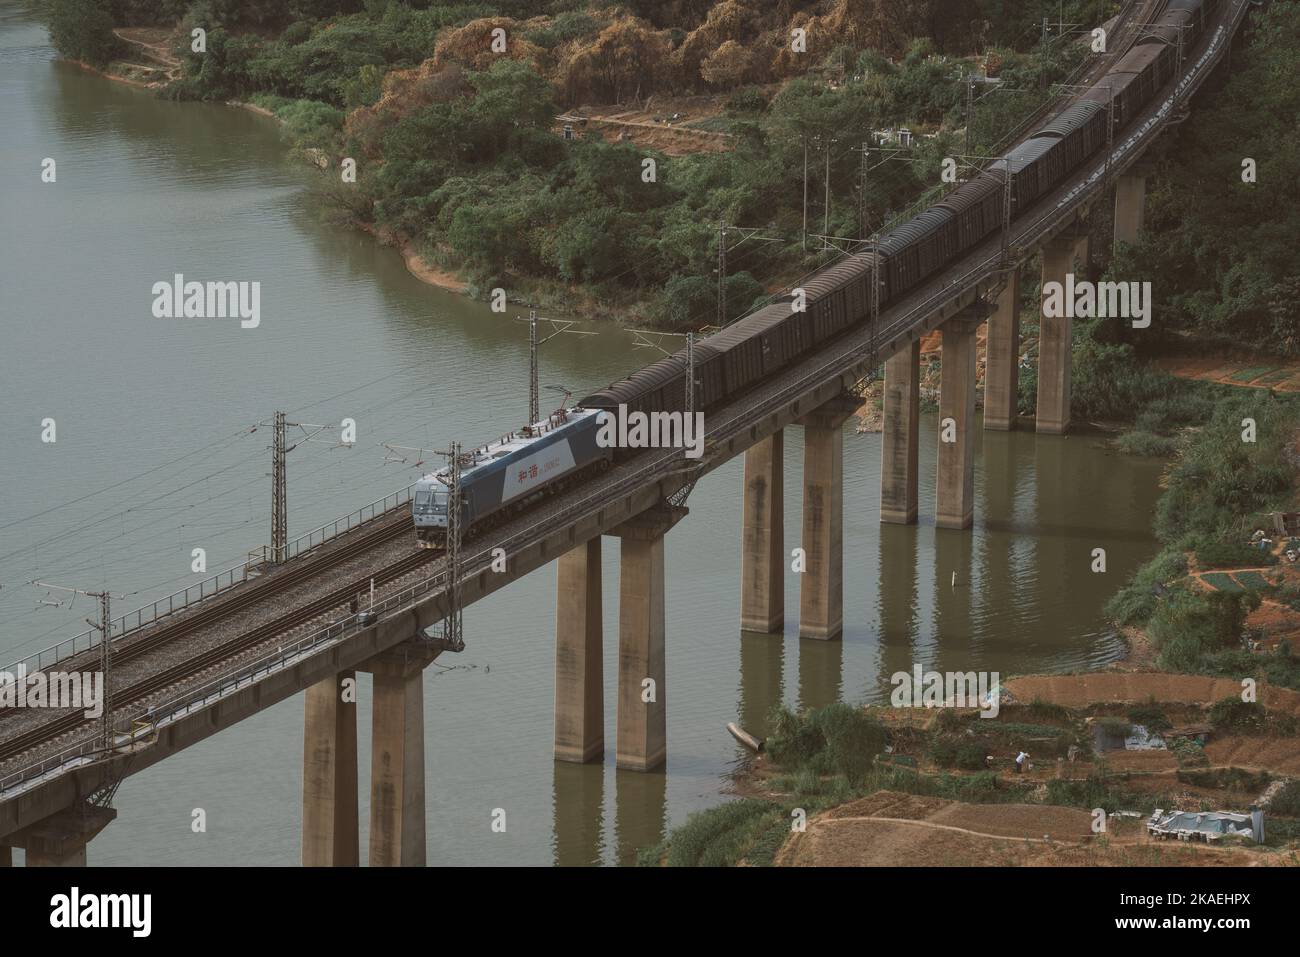 A beautiful aerial view of a train crossing a bridge over the Yangtze River in Jiujiang, China Stock Photo